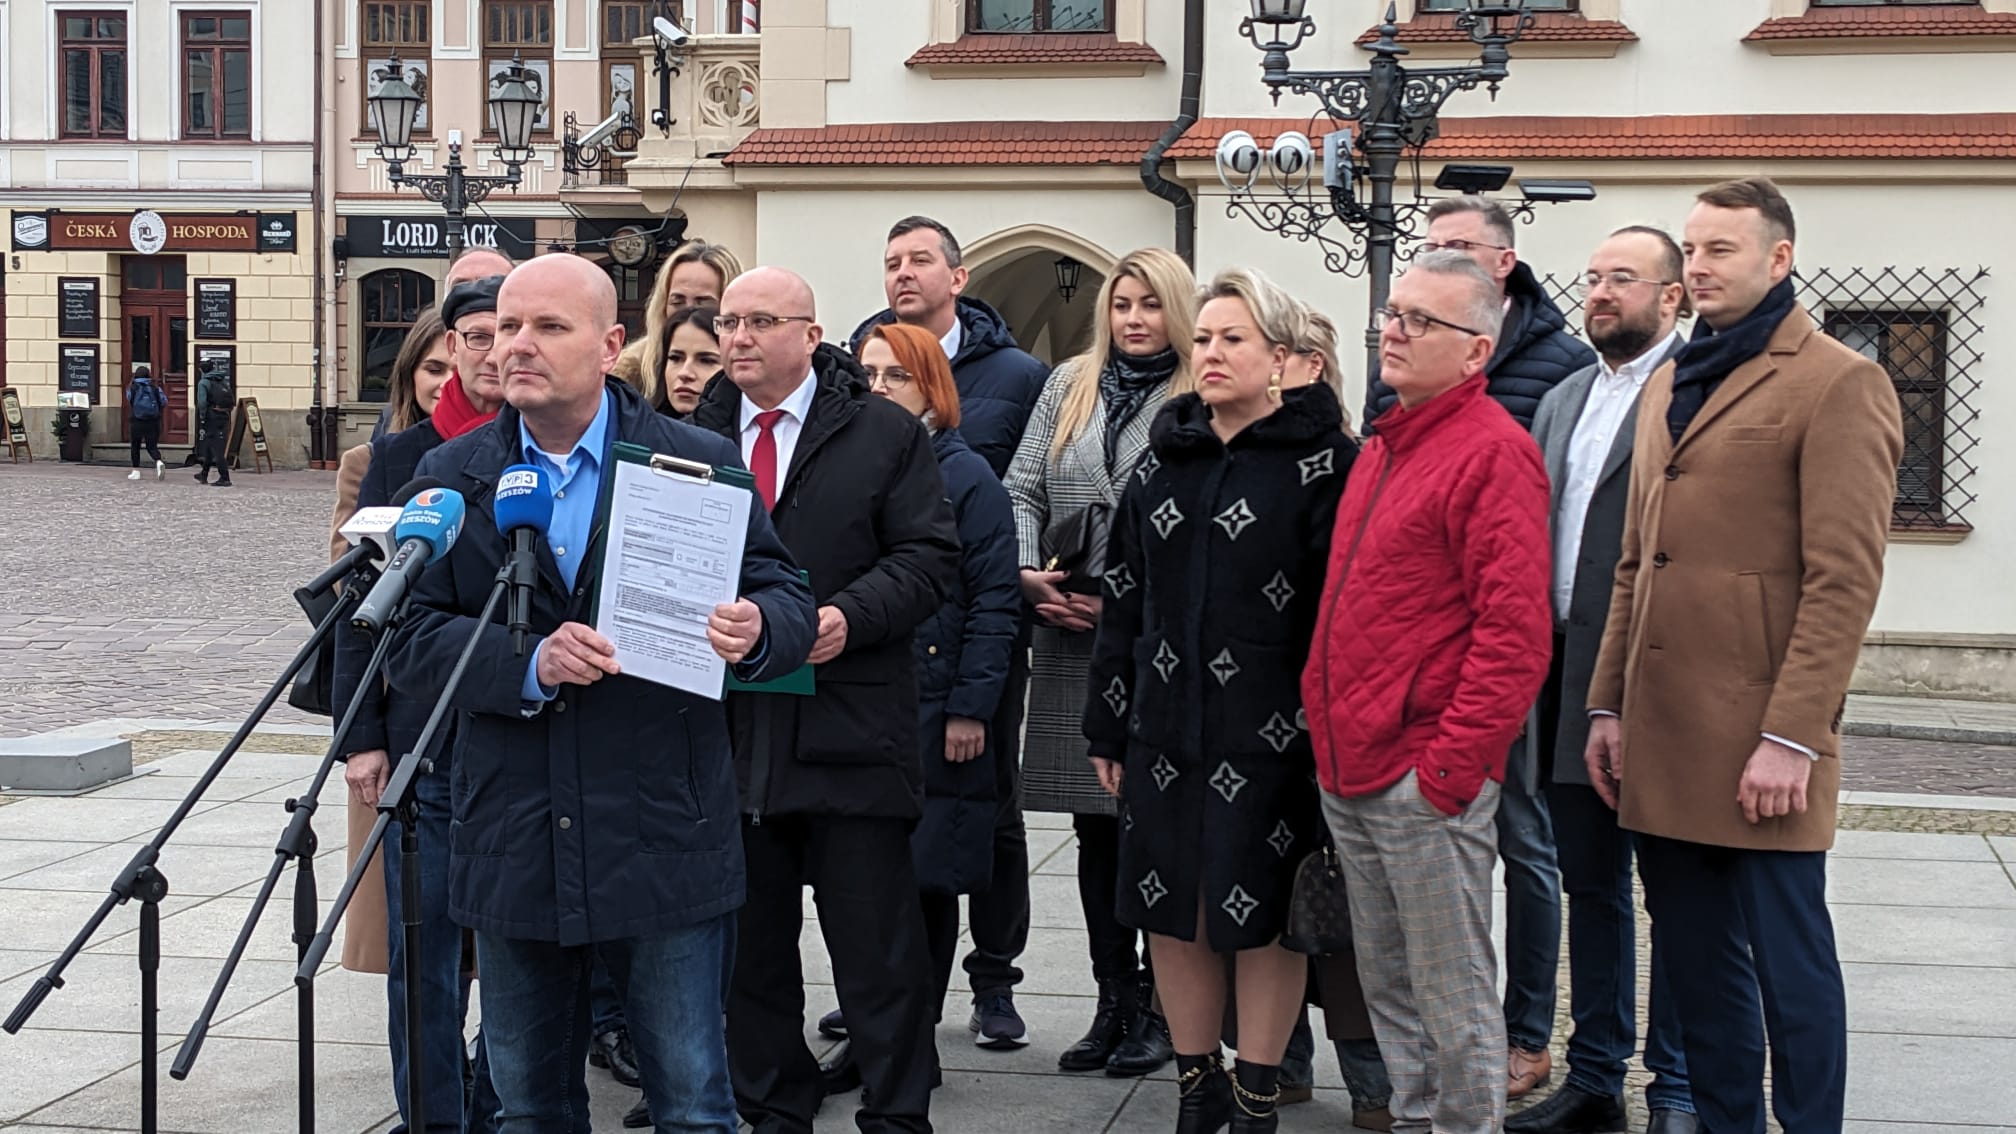 KWW Porozumienie Sprzyja Ludziom – Trzecia Droga zarejestrował listy kandydatów do Rady Miasta Rzeszowa (3)